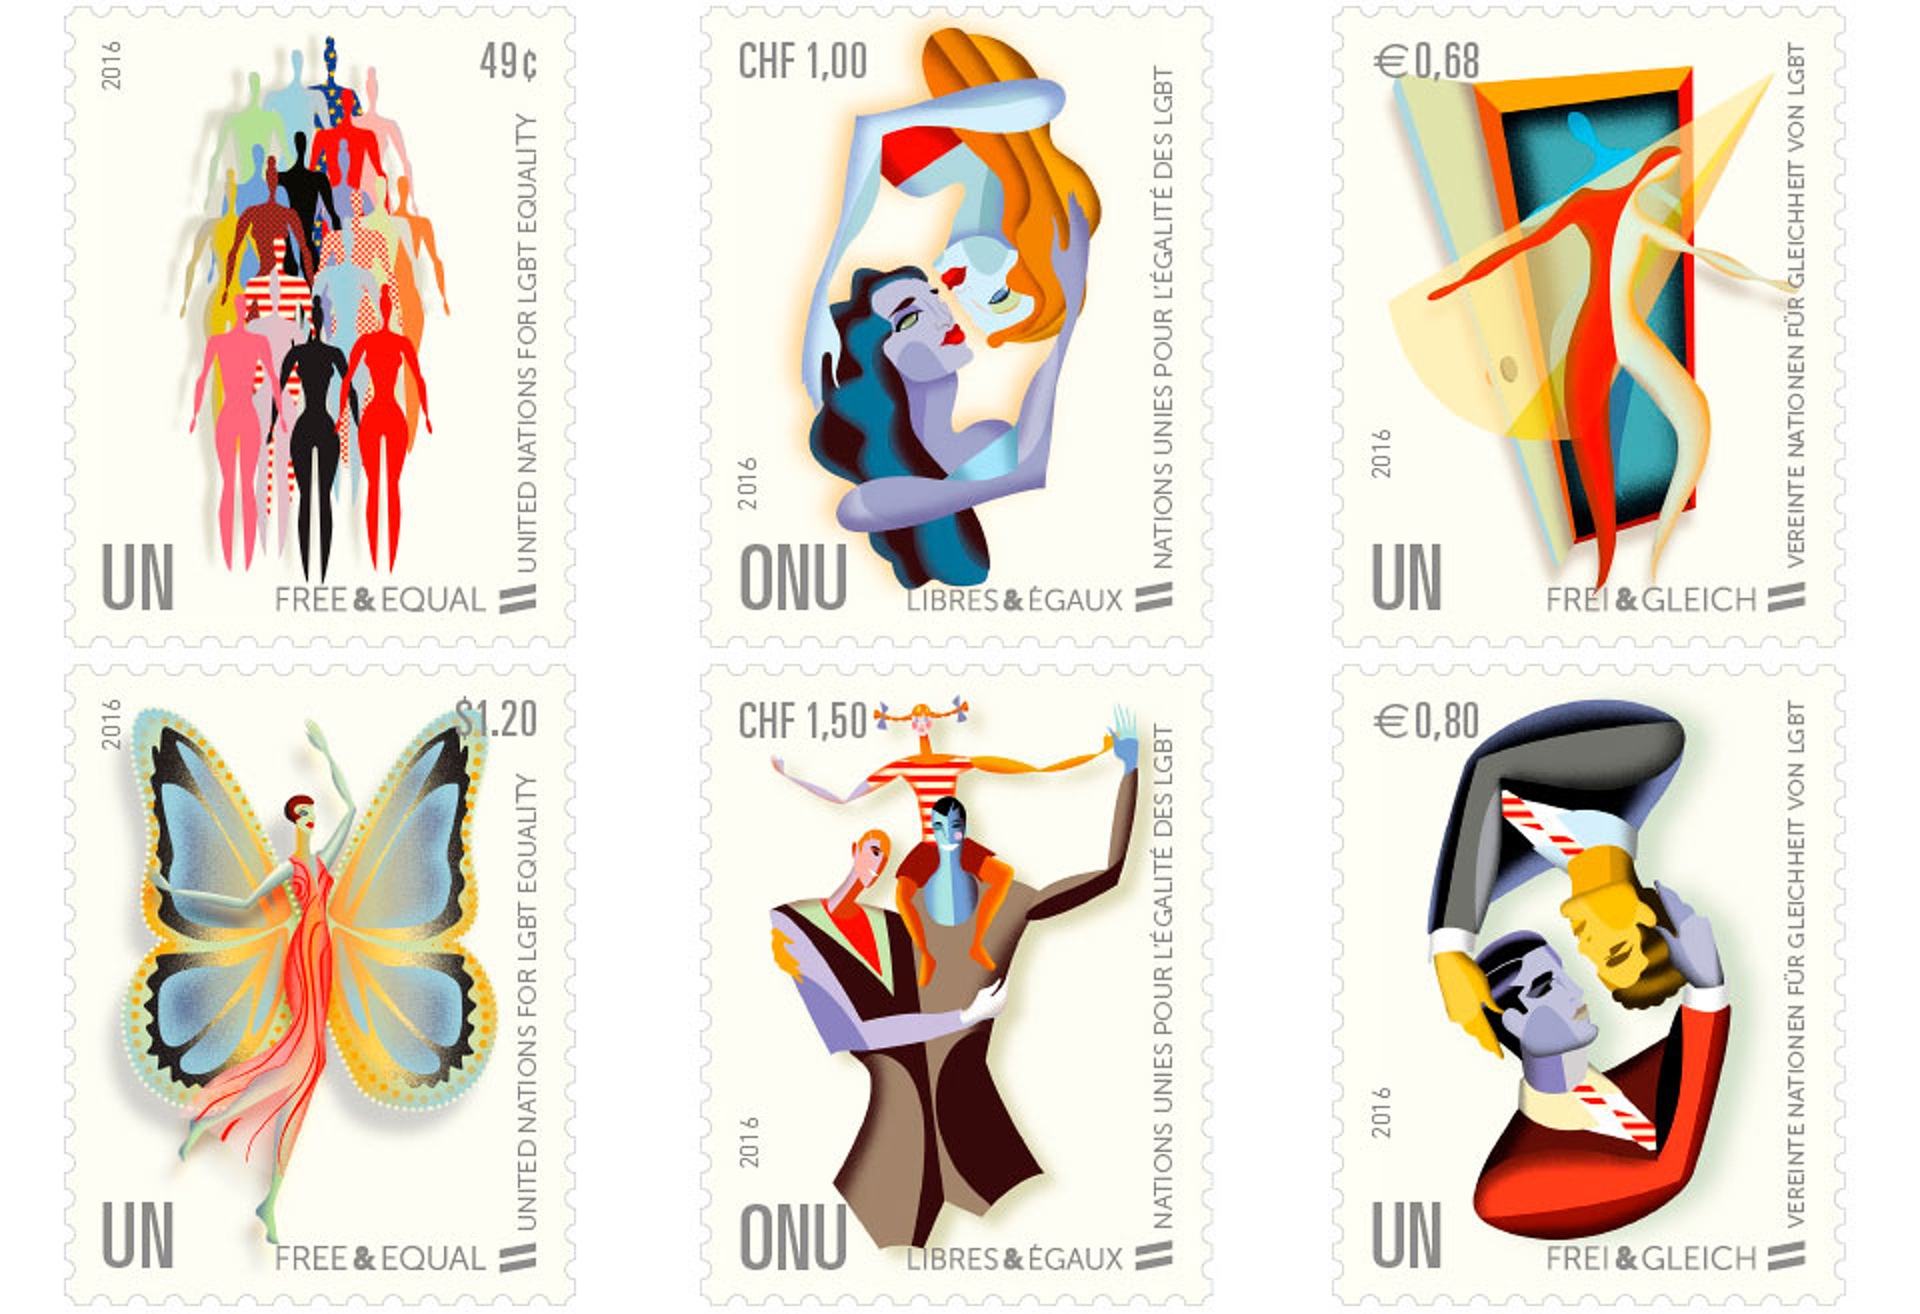 UN LGBT stamps